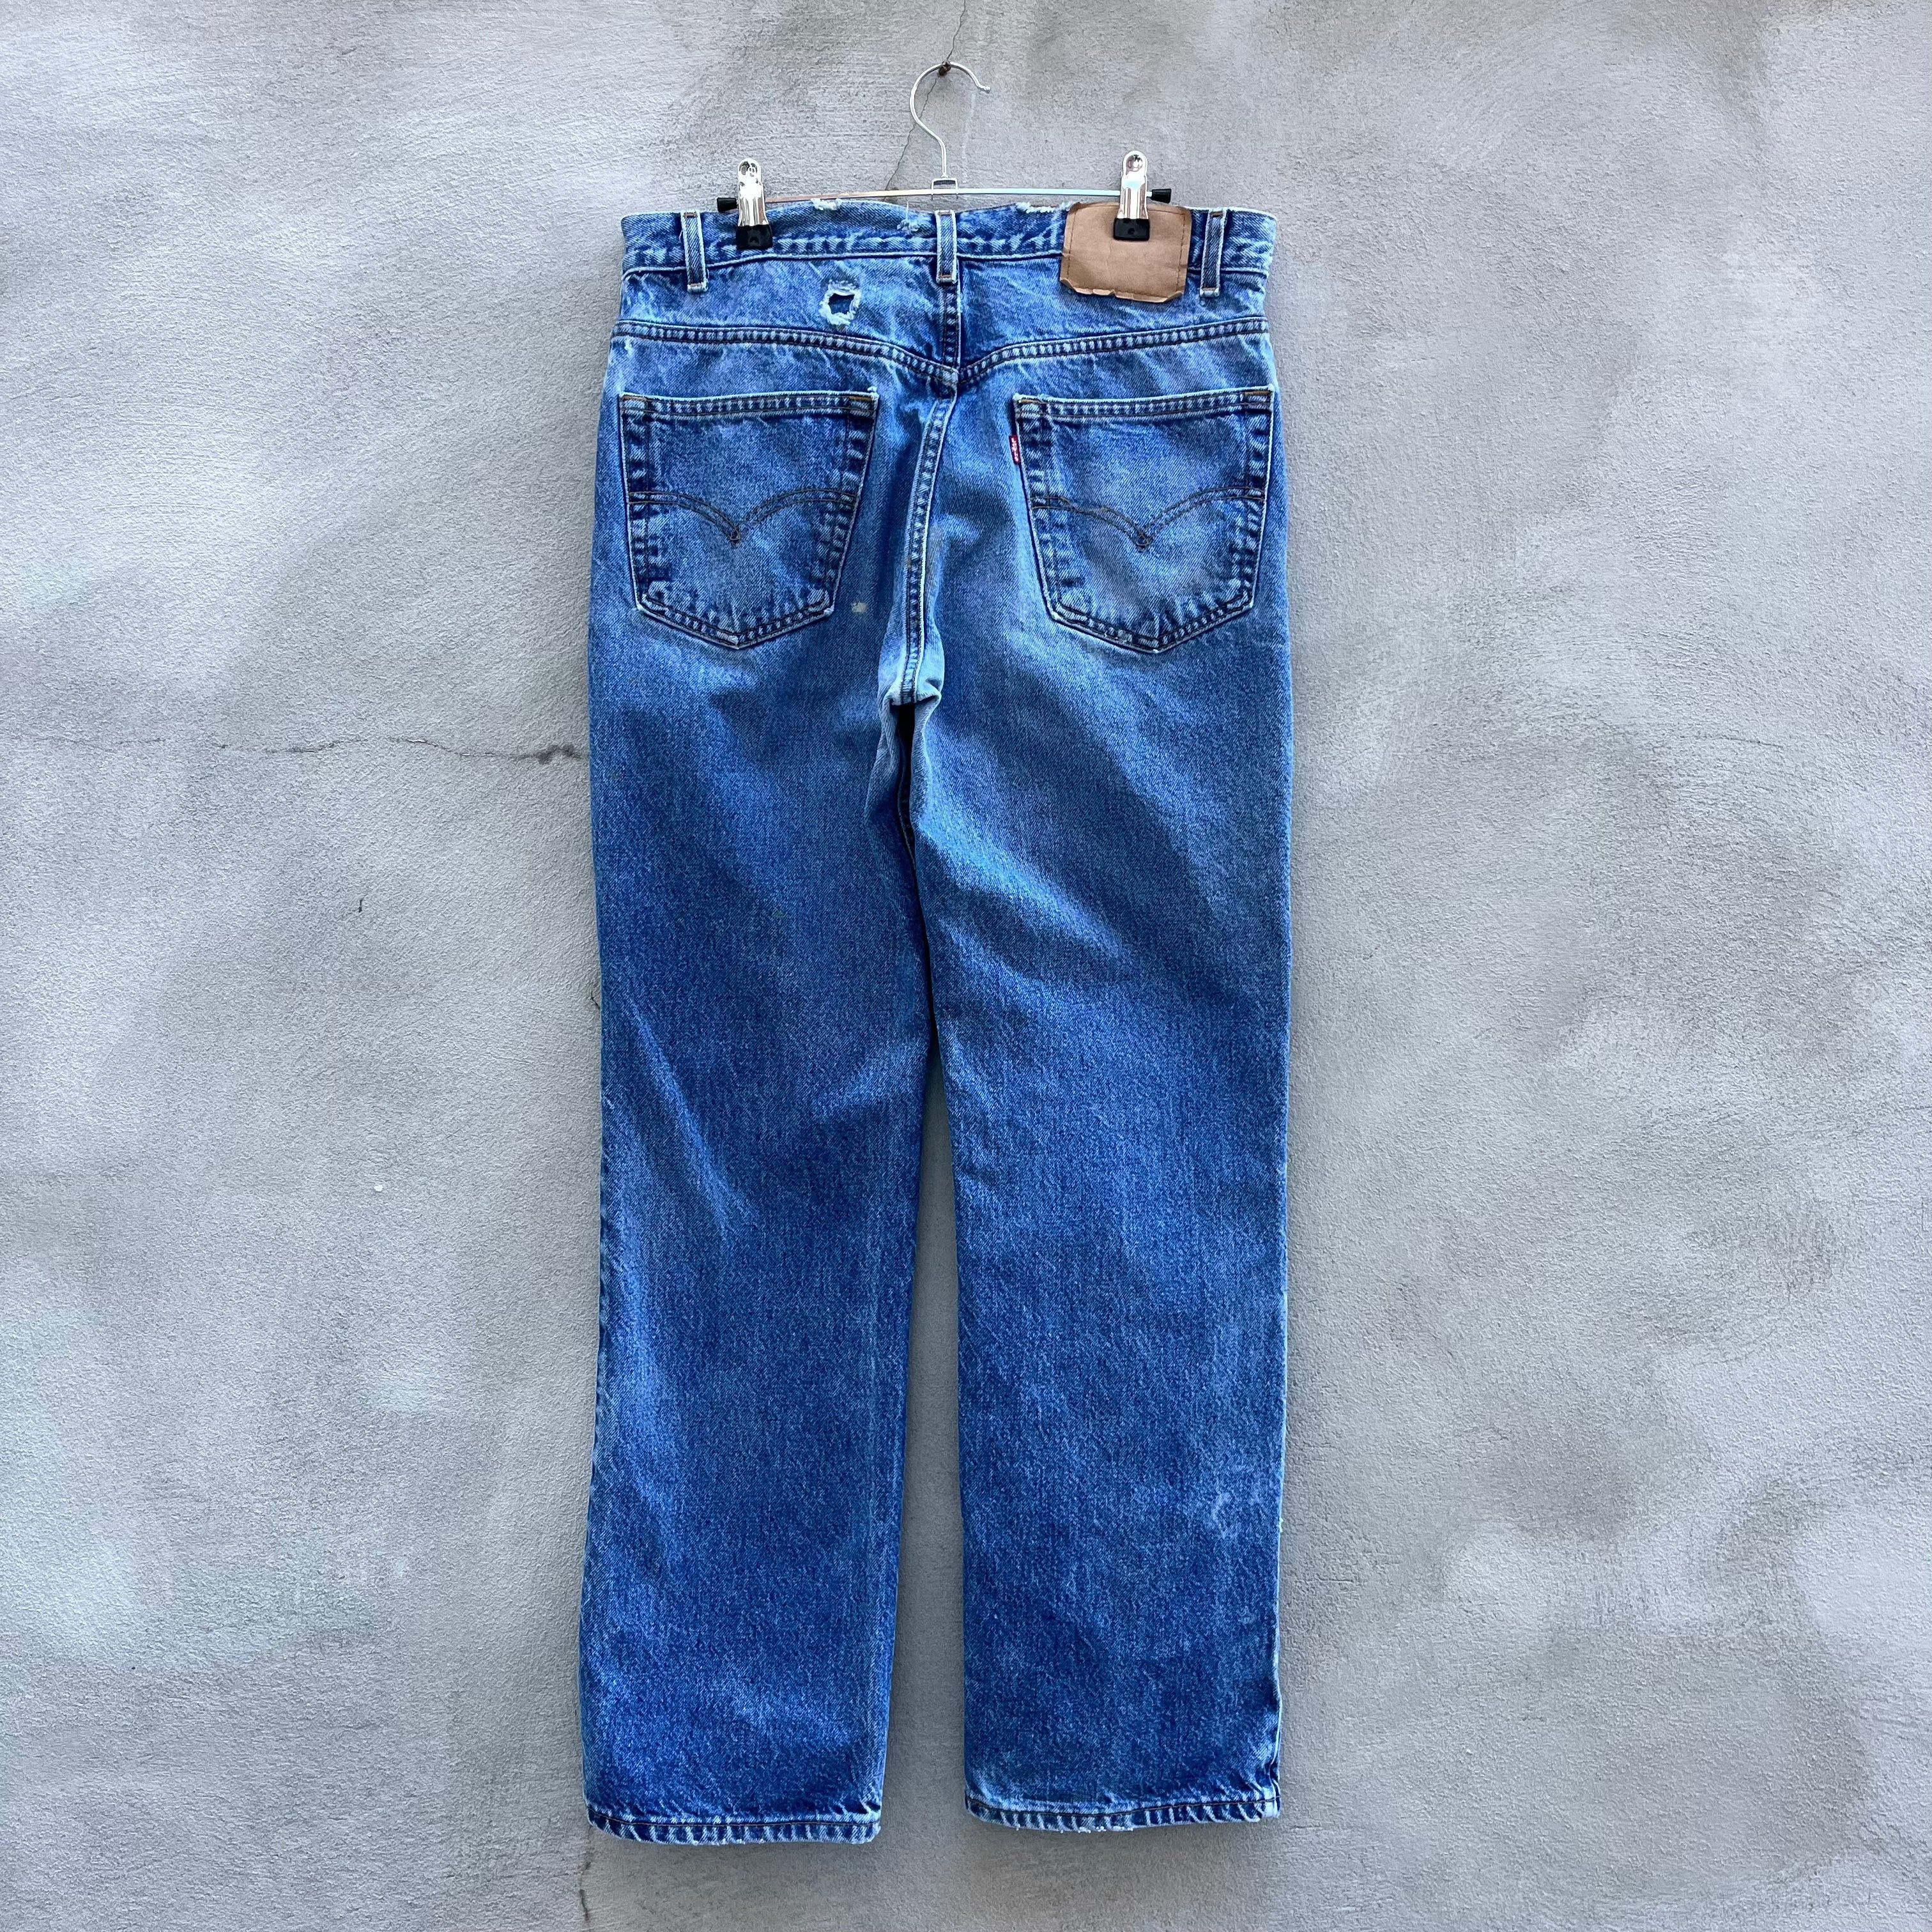 Vintage 90’s Levi’s 517 Jeans Size US 33 - 2 Preview